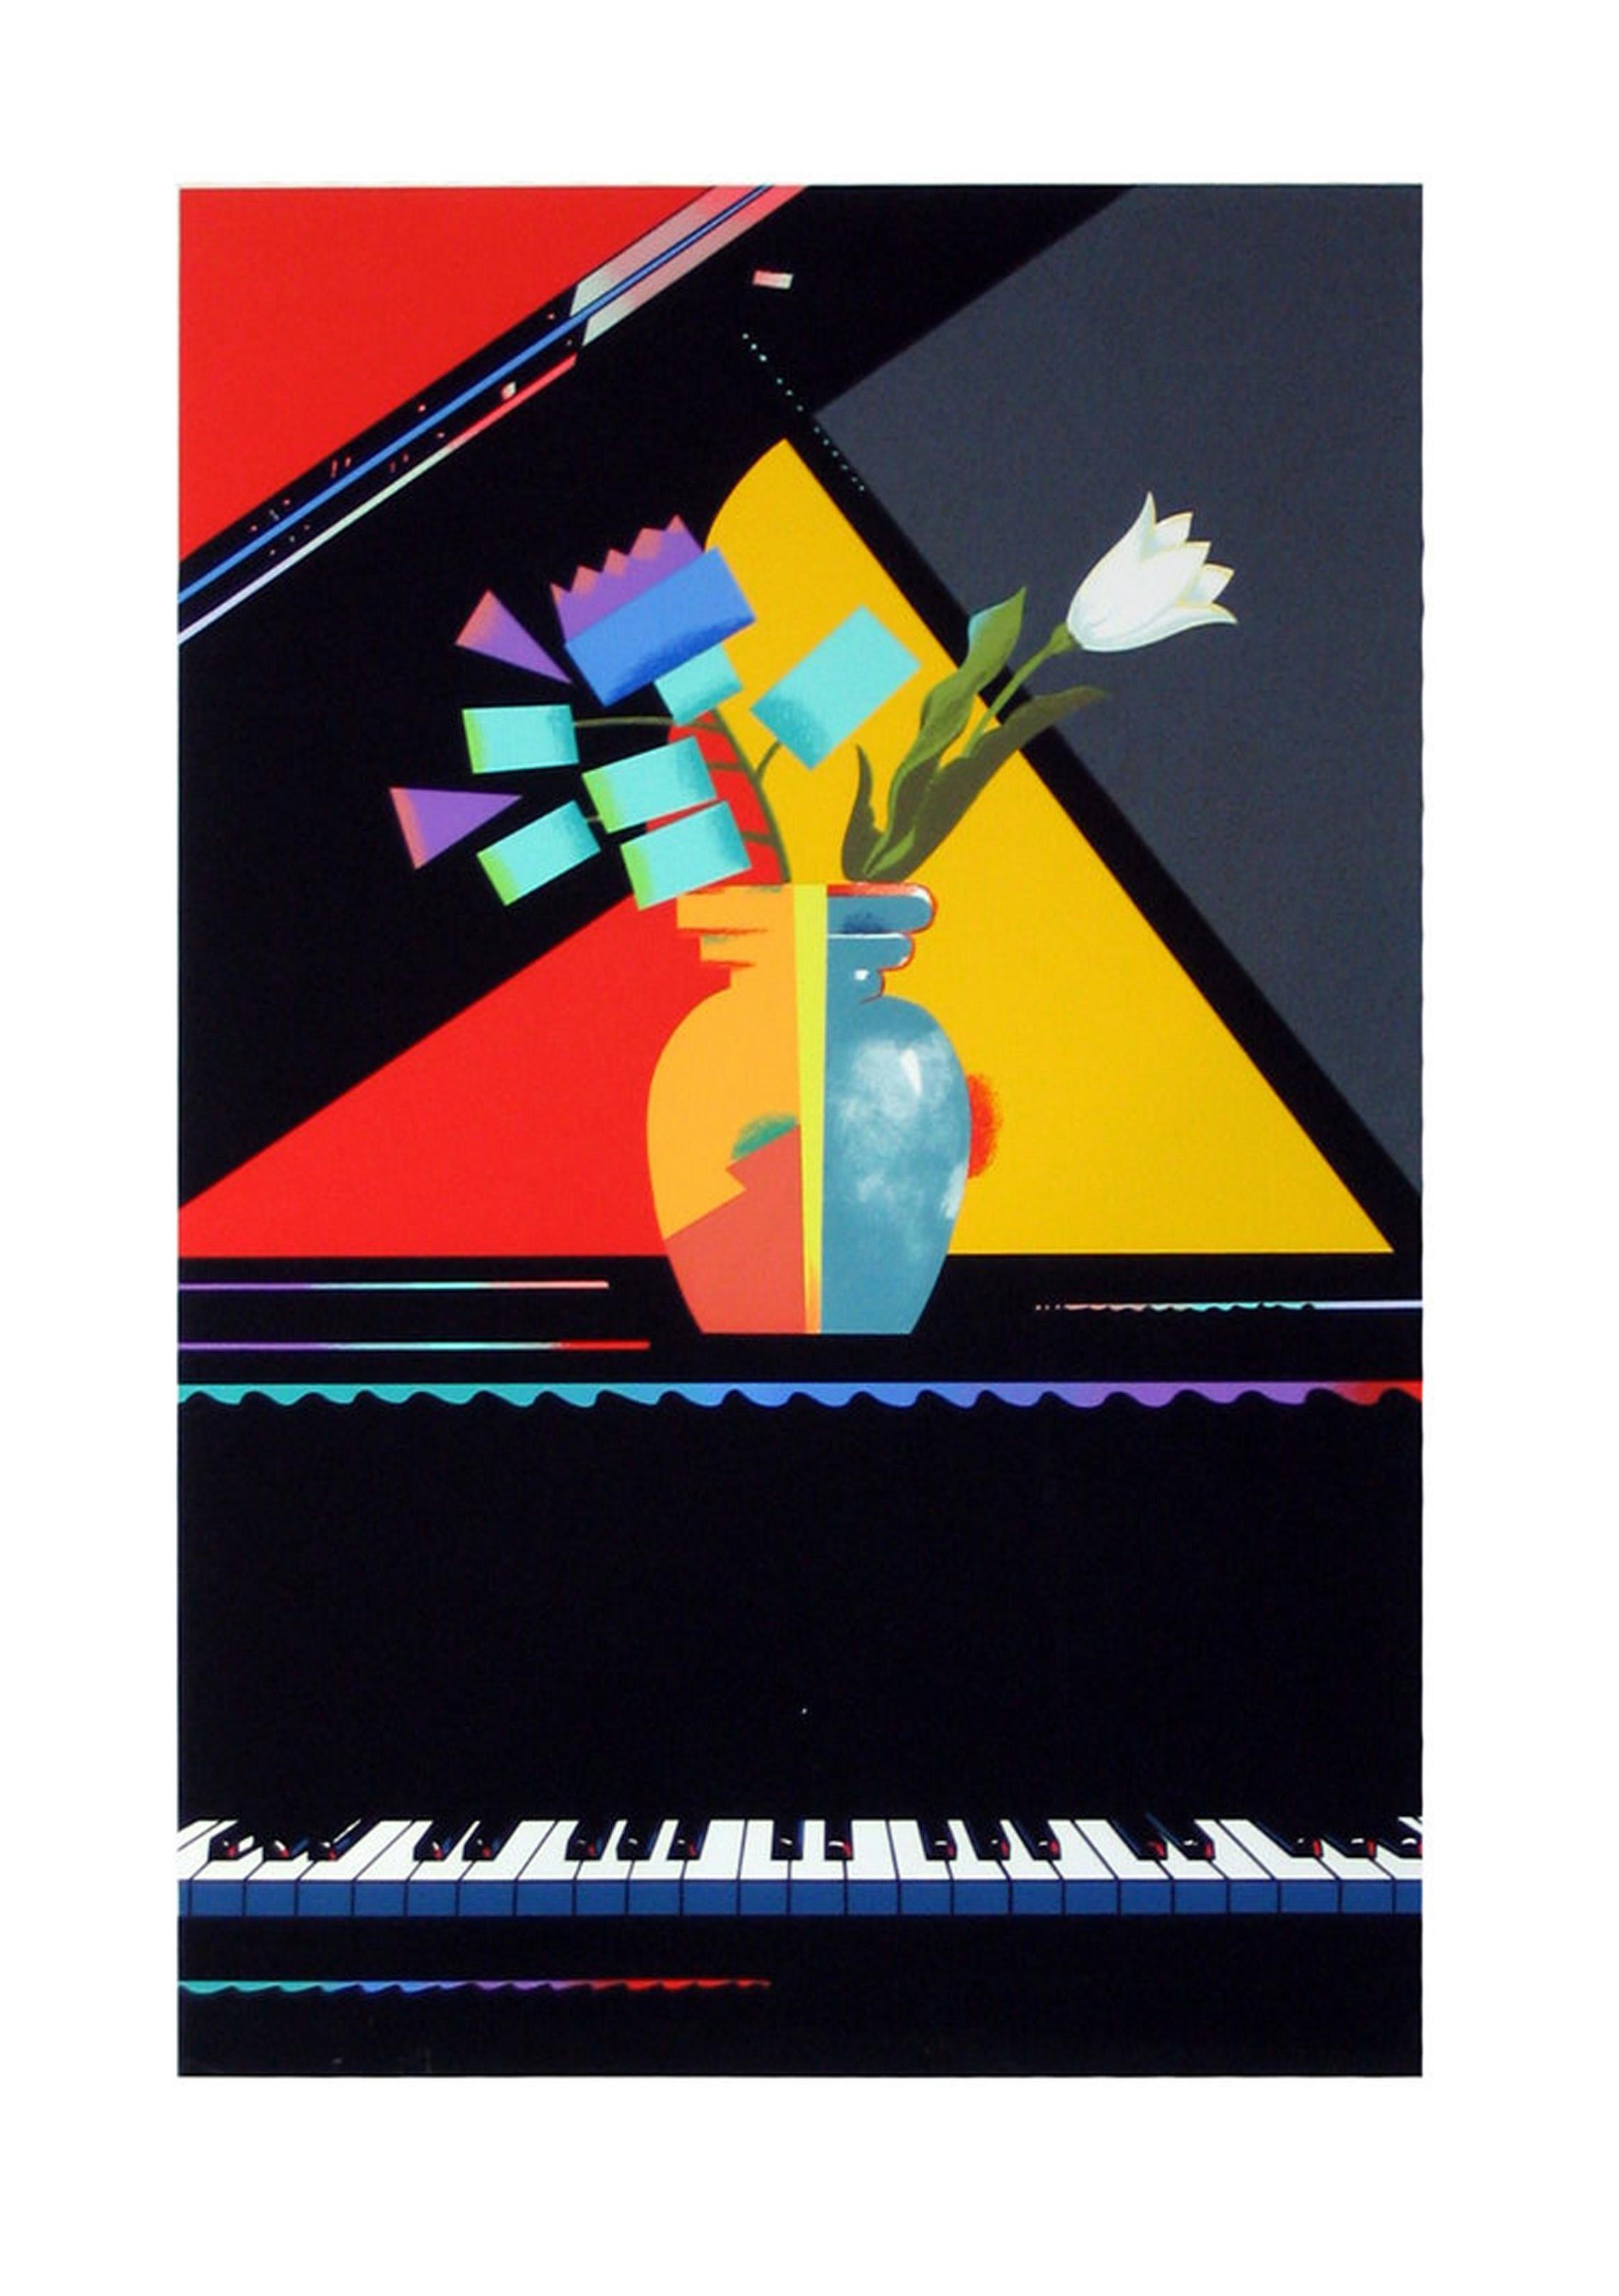 Il s'agit d'un rendu audacieux et géométrique d'un vase de fleurs surmontant un piano à queue. Le fond est clairement divisé en trois couleurs, rouge, jaune et gris, tandis que les fleurs et le vase semblent être des formes abstraites à moitié